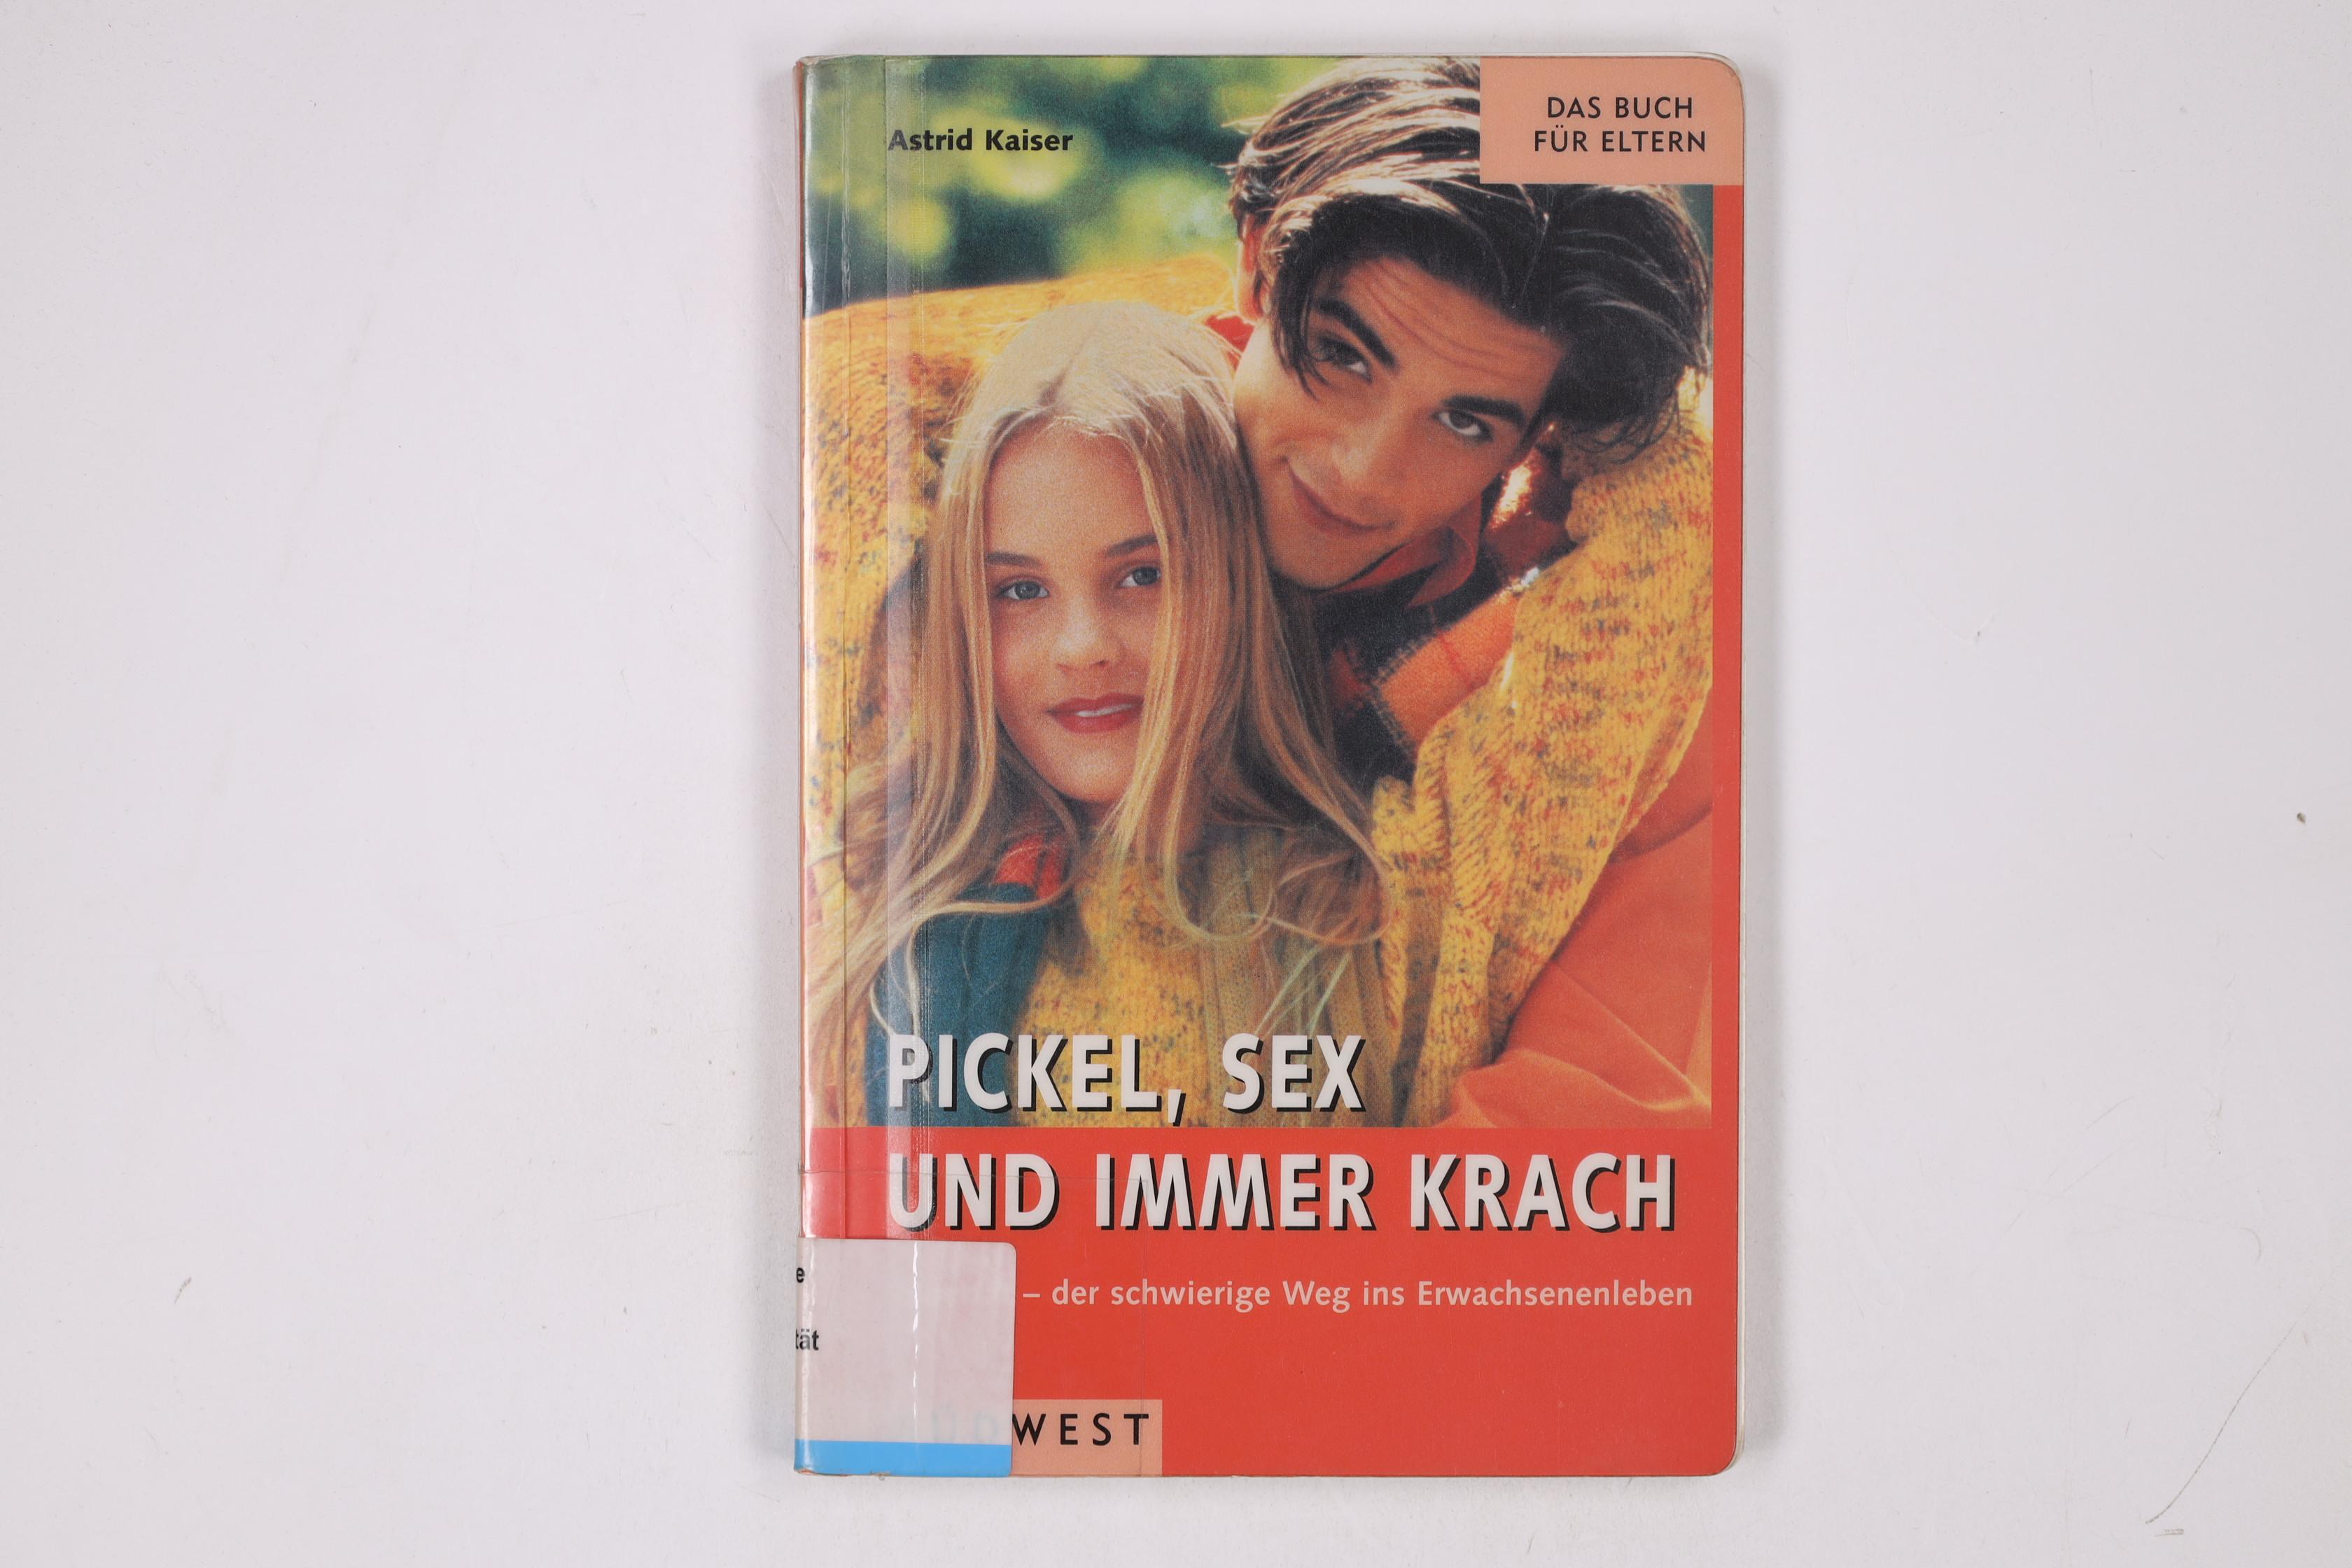 PICKEL, SEX UND IMMER KRACH. - unbekannt